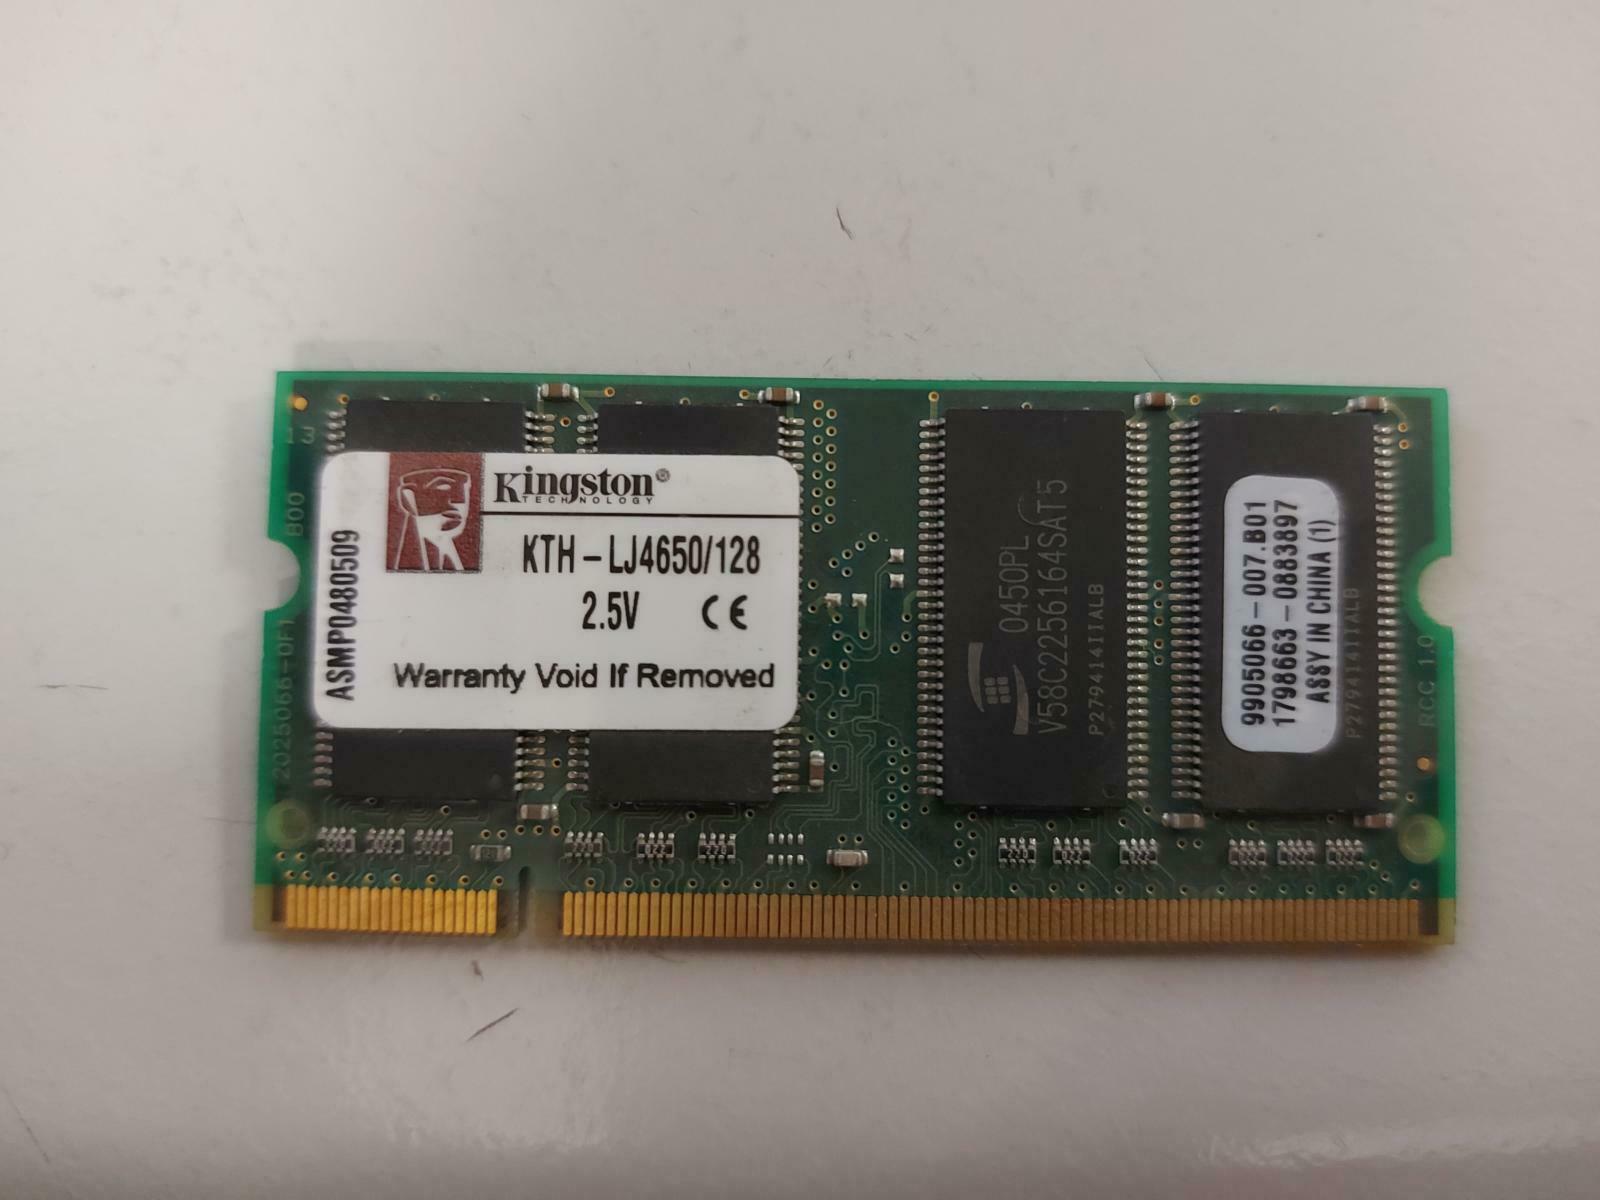 Kingston 128MB DDR SoDimm NonECC PC2100 266Mhz Memory KTH-LJ4650/128 9905066-007